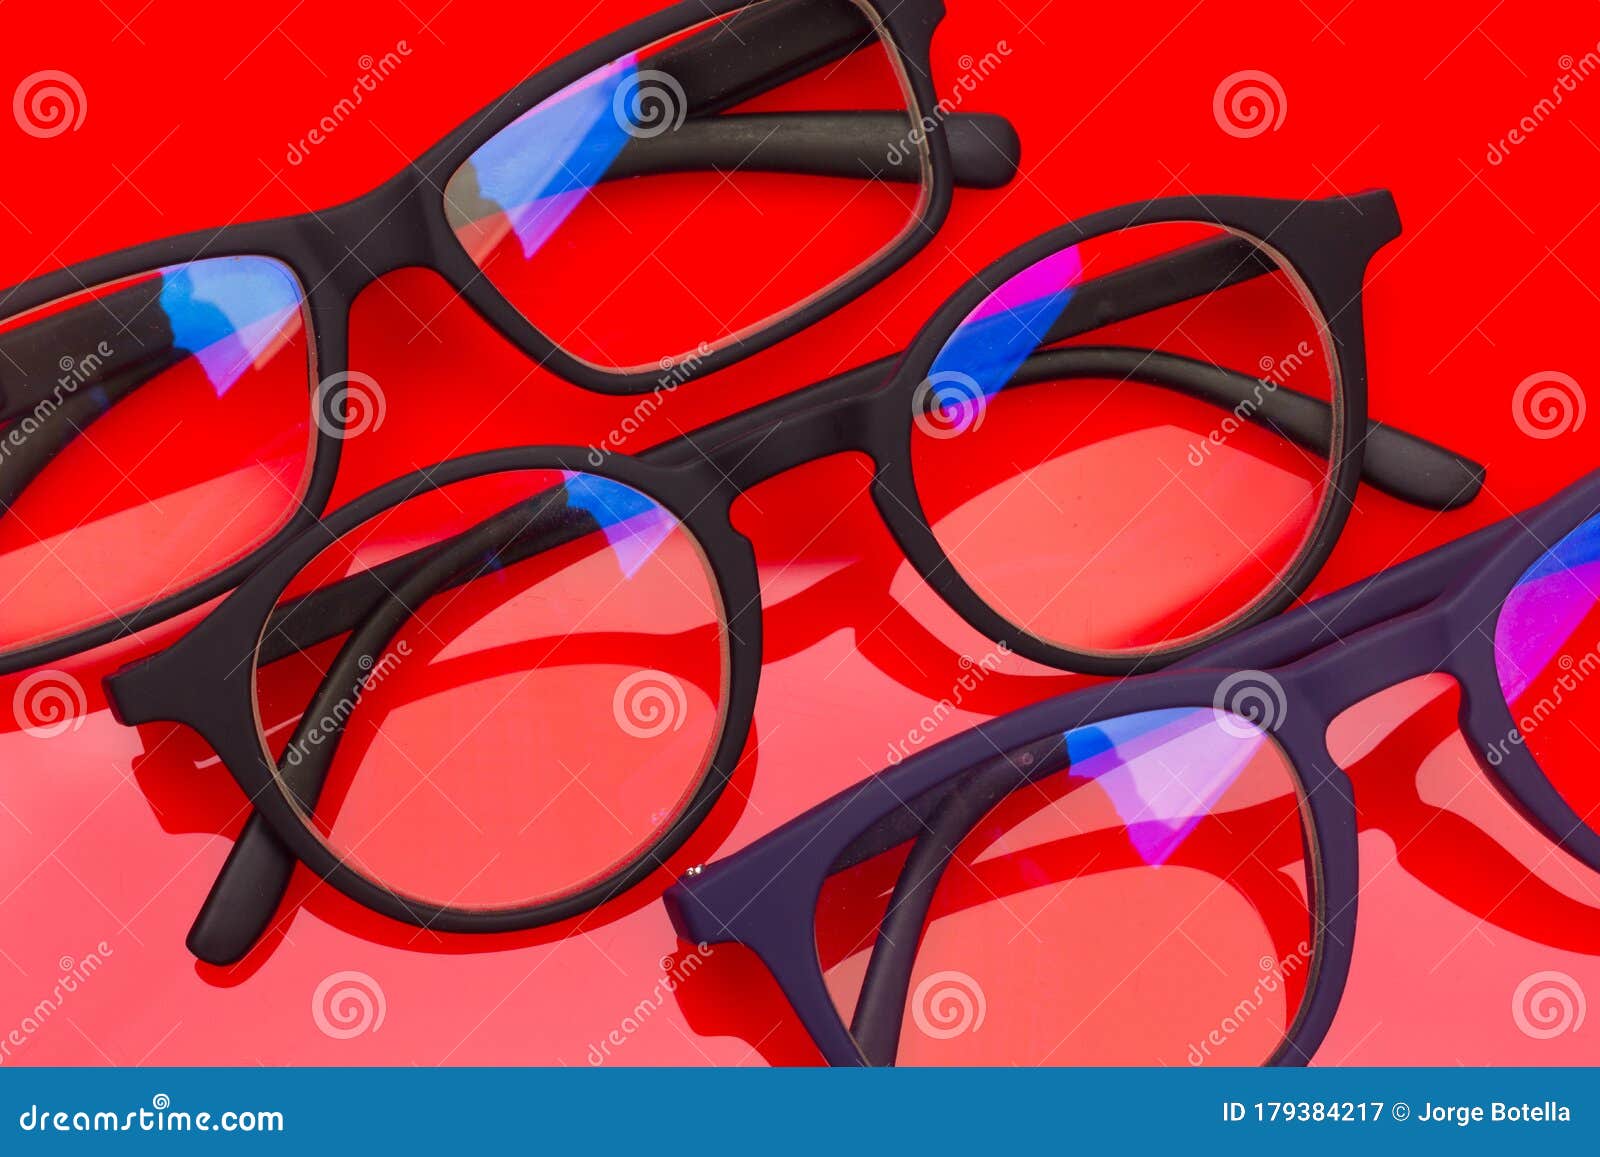 Gafas Diseño Para Ver Bien Imagen de - Imagen de nombres, trendy: 179384217